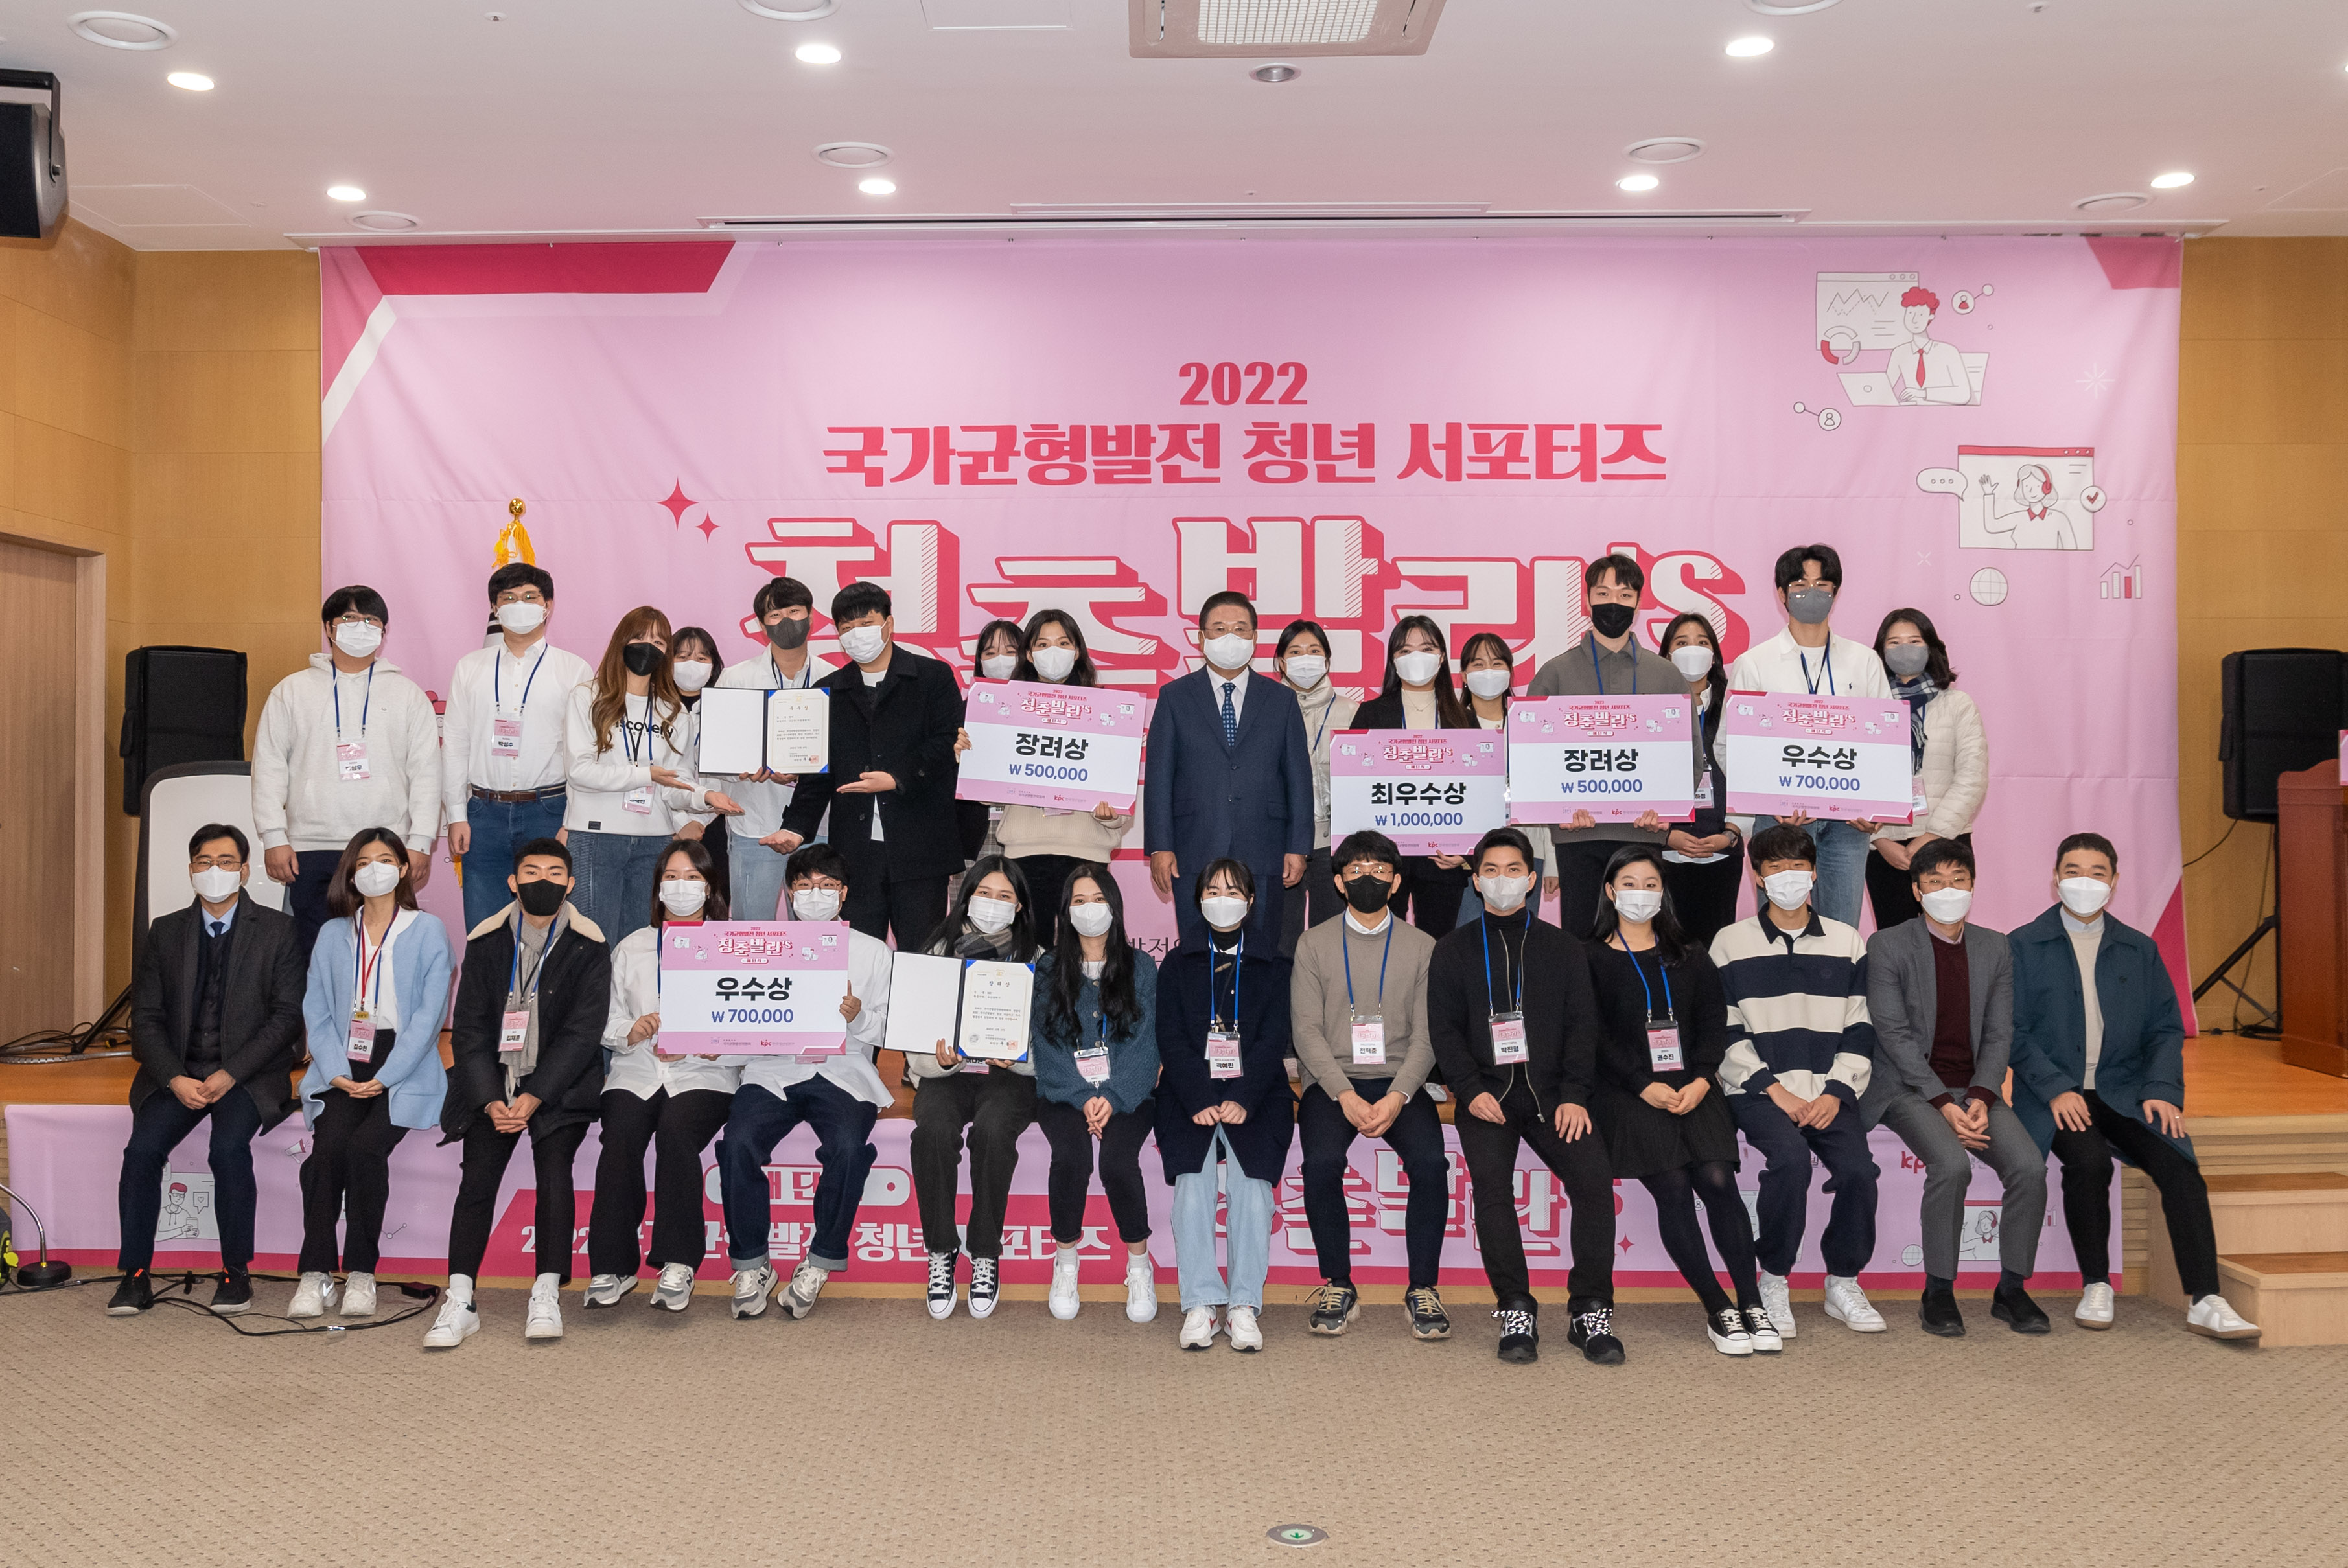 12월 19일 정부세종청사에서 2022 국가균형발전 청년 서포터즈 청춘발란's 해단식이 열렸다.(5)